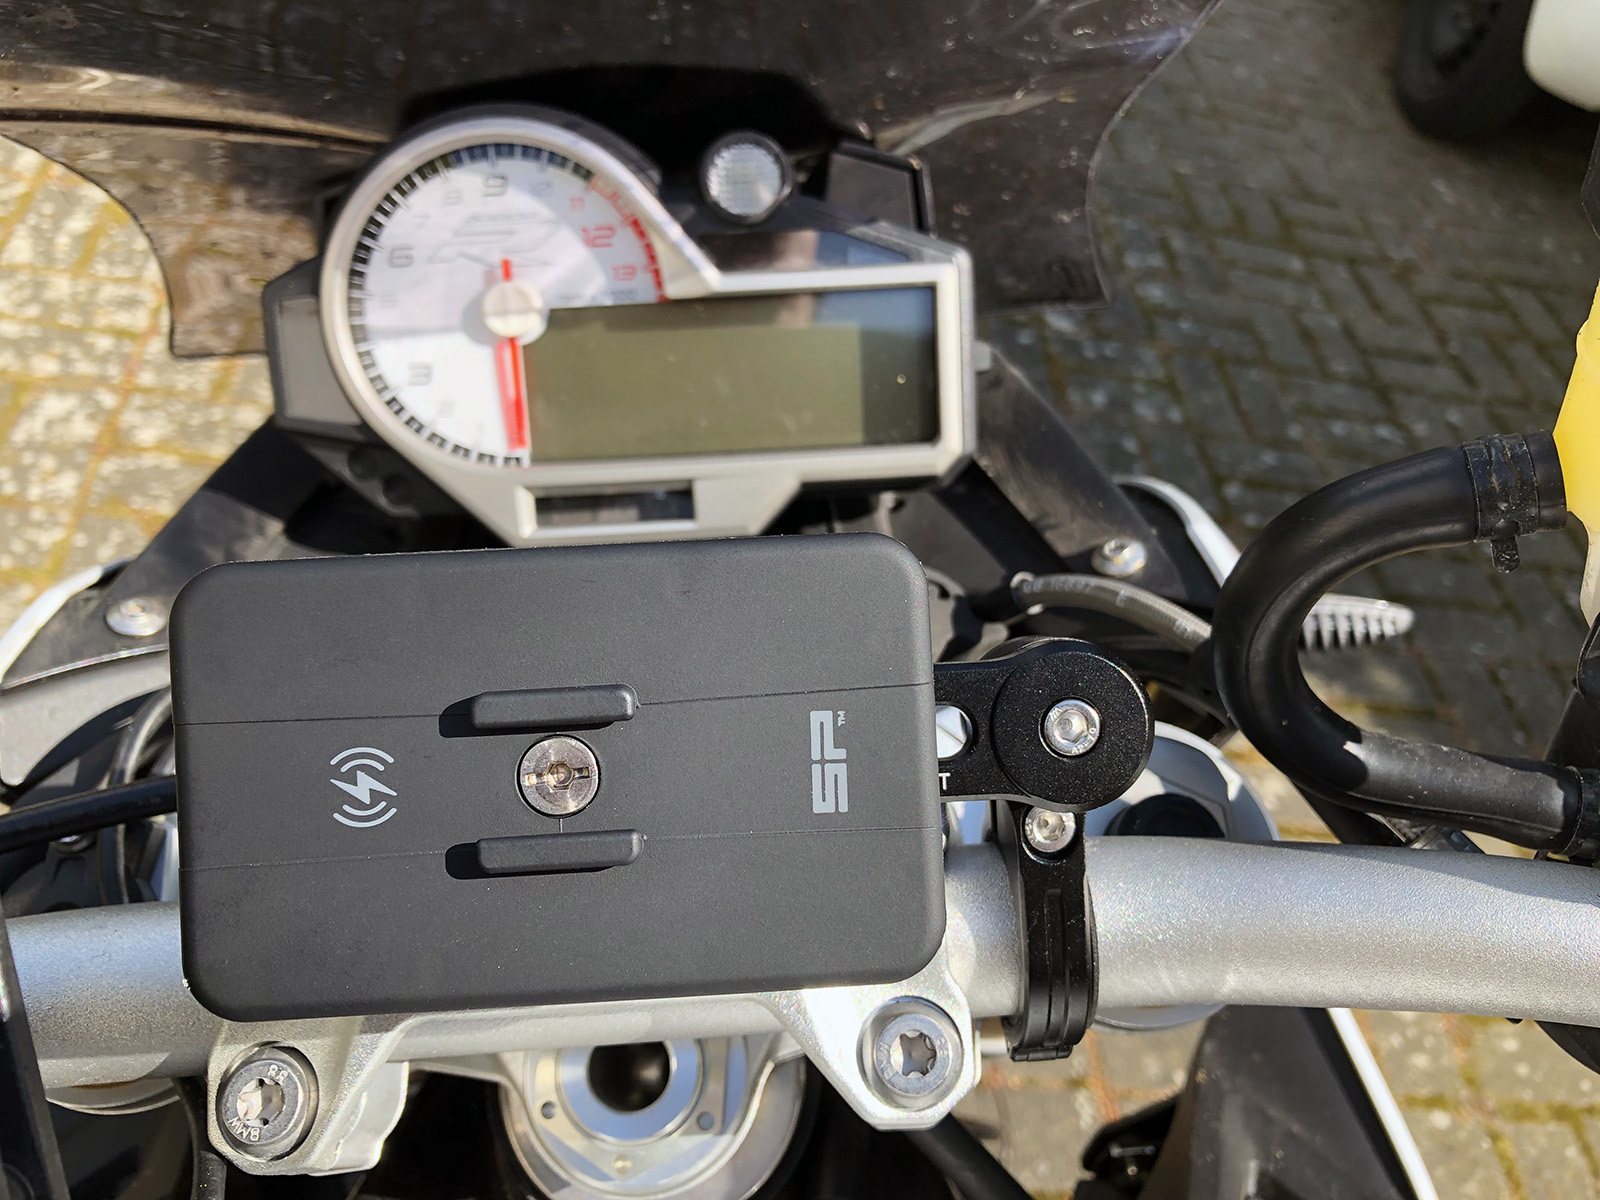 SP CONNECT SP CONNECT Handyhalterung Motorrad - …